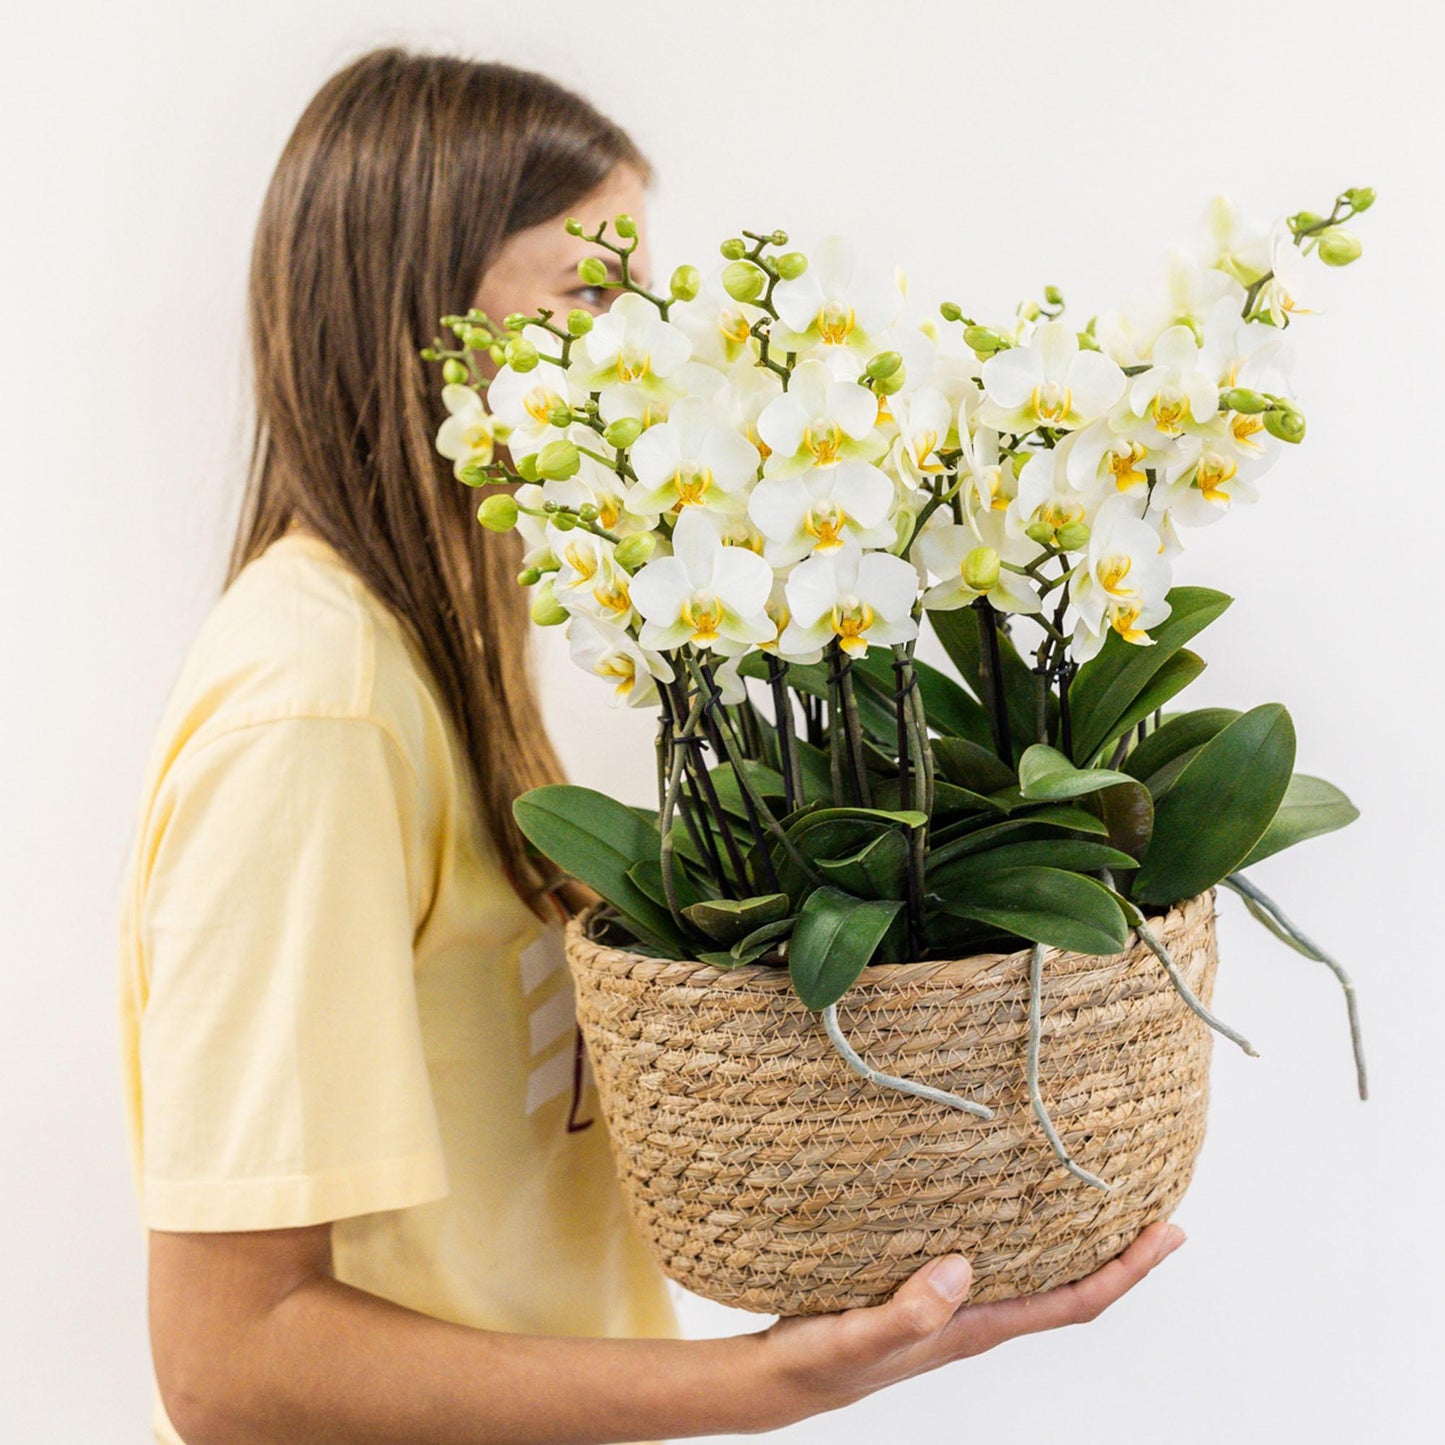 Kolibri Orchids | witte plantenset in Reed Basket incl. waterreservoir | drie witte orchideeën Lausanne 9cm en drie groene planten Rhipsalis | Jungle Bouquet wit met zelfvoorzienend waterreservoir